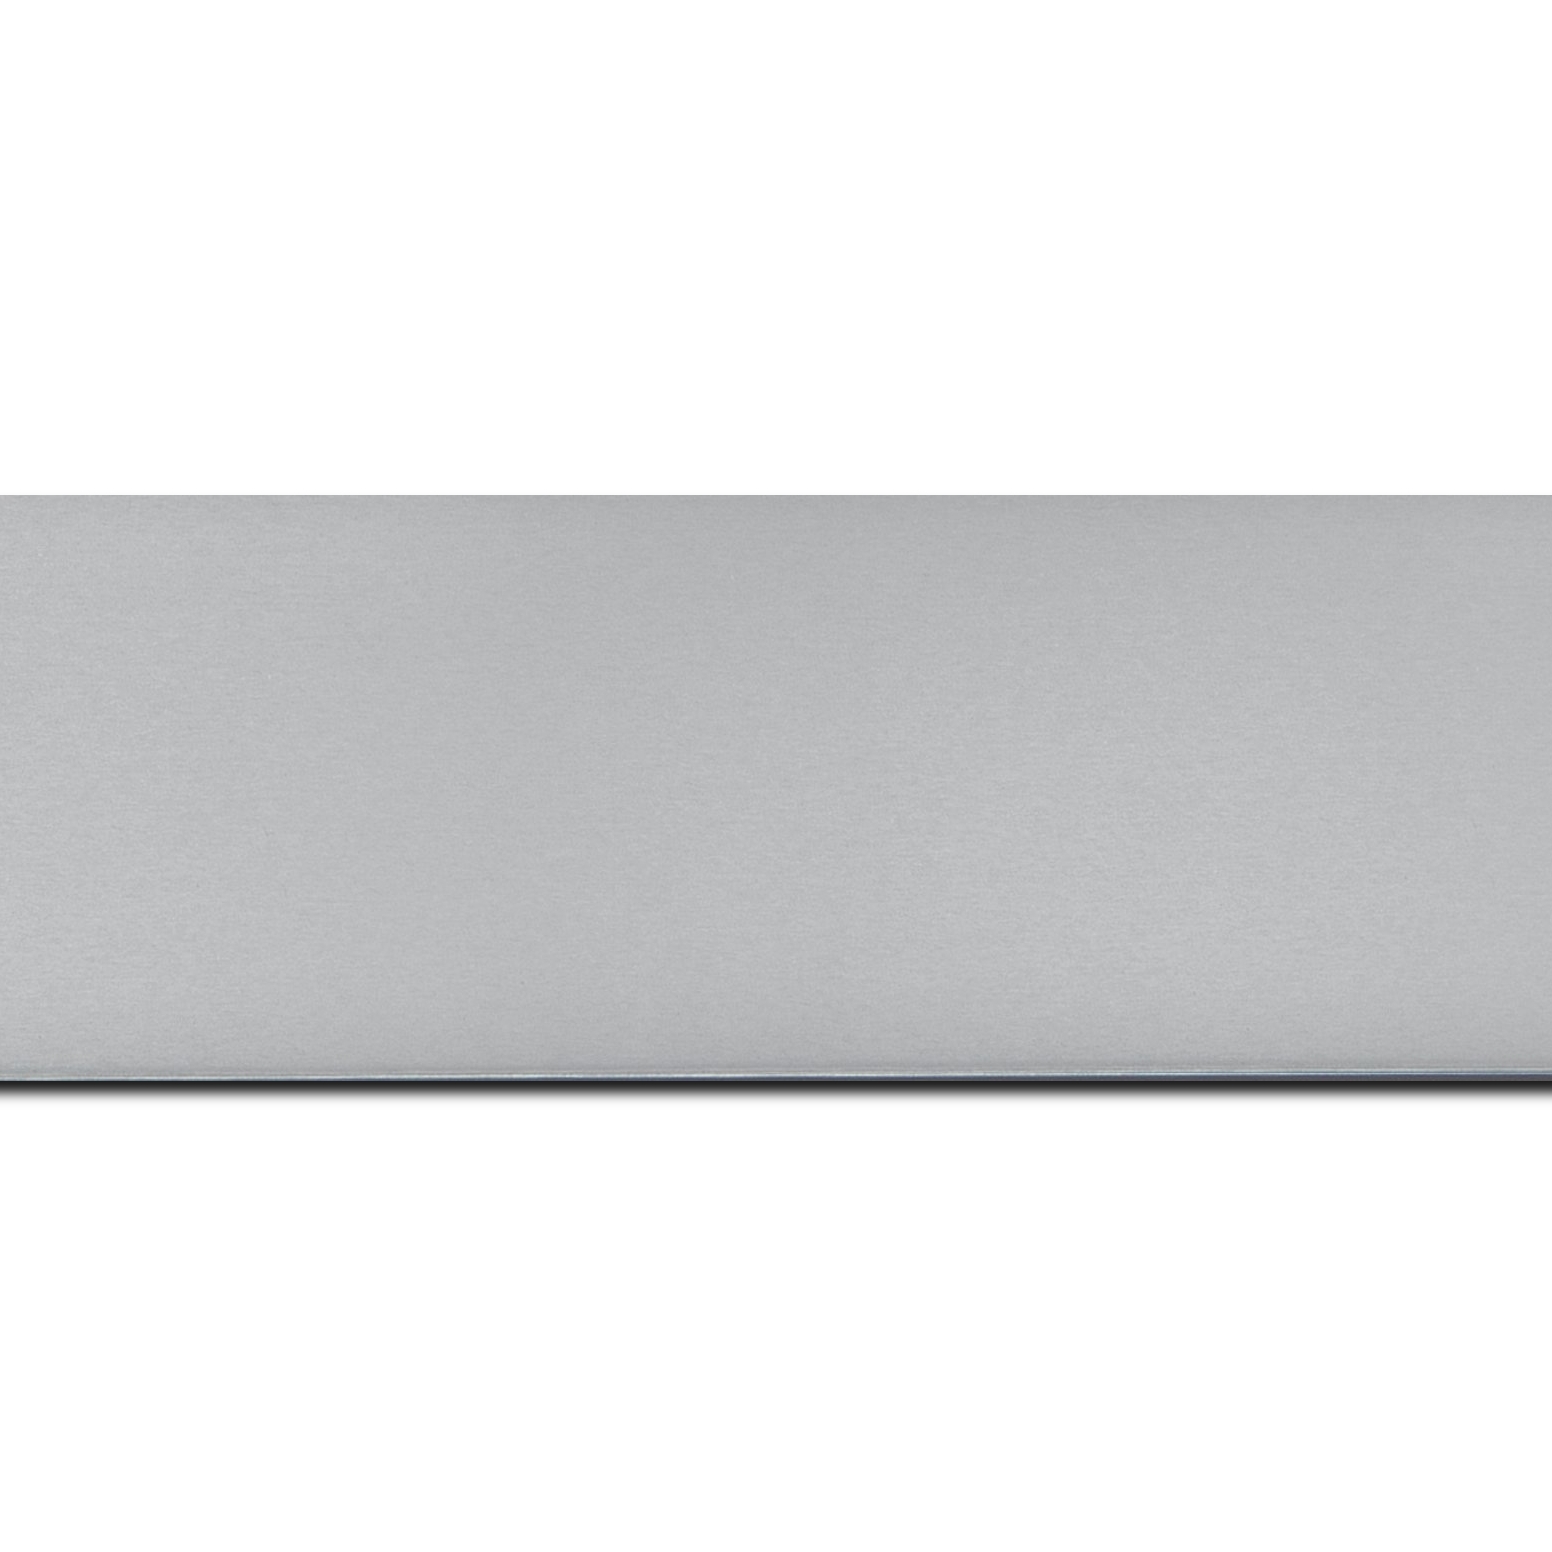 Baguette longueur 1.40m bois recouvert aluminium profil plat largeur 6cm argent brossé bord droit